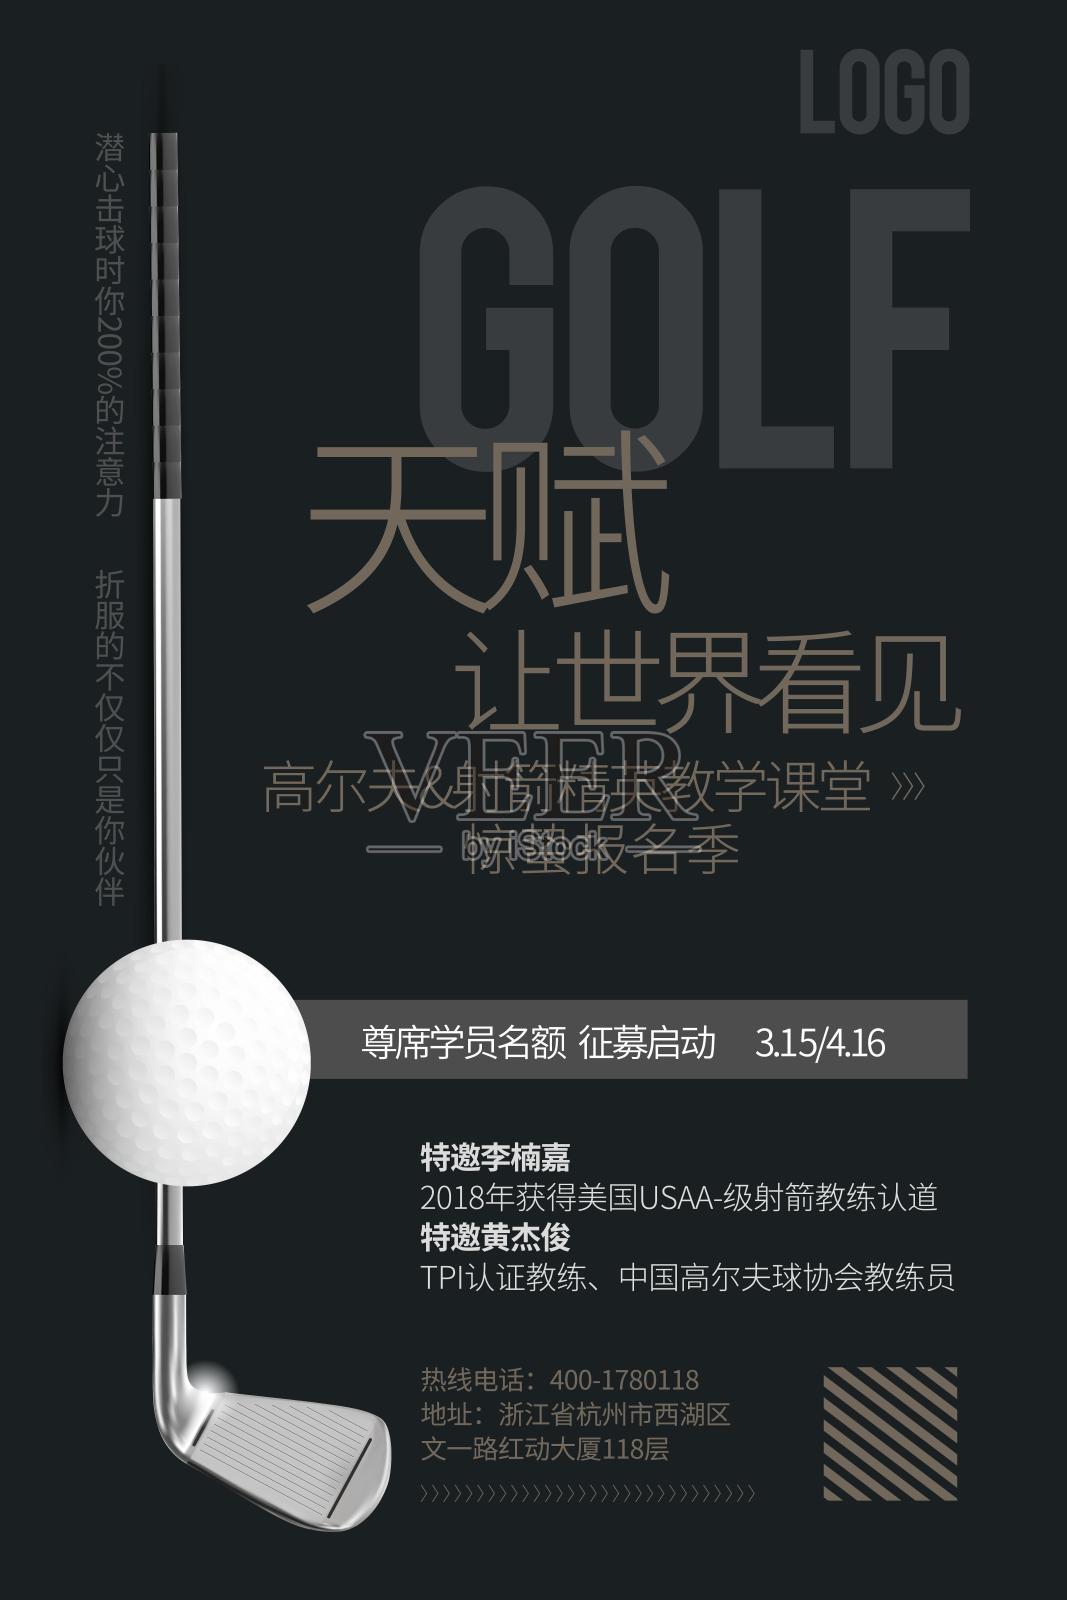 高尔夫海报设计模板素材